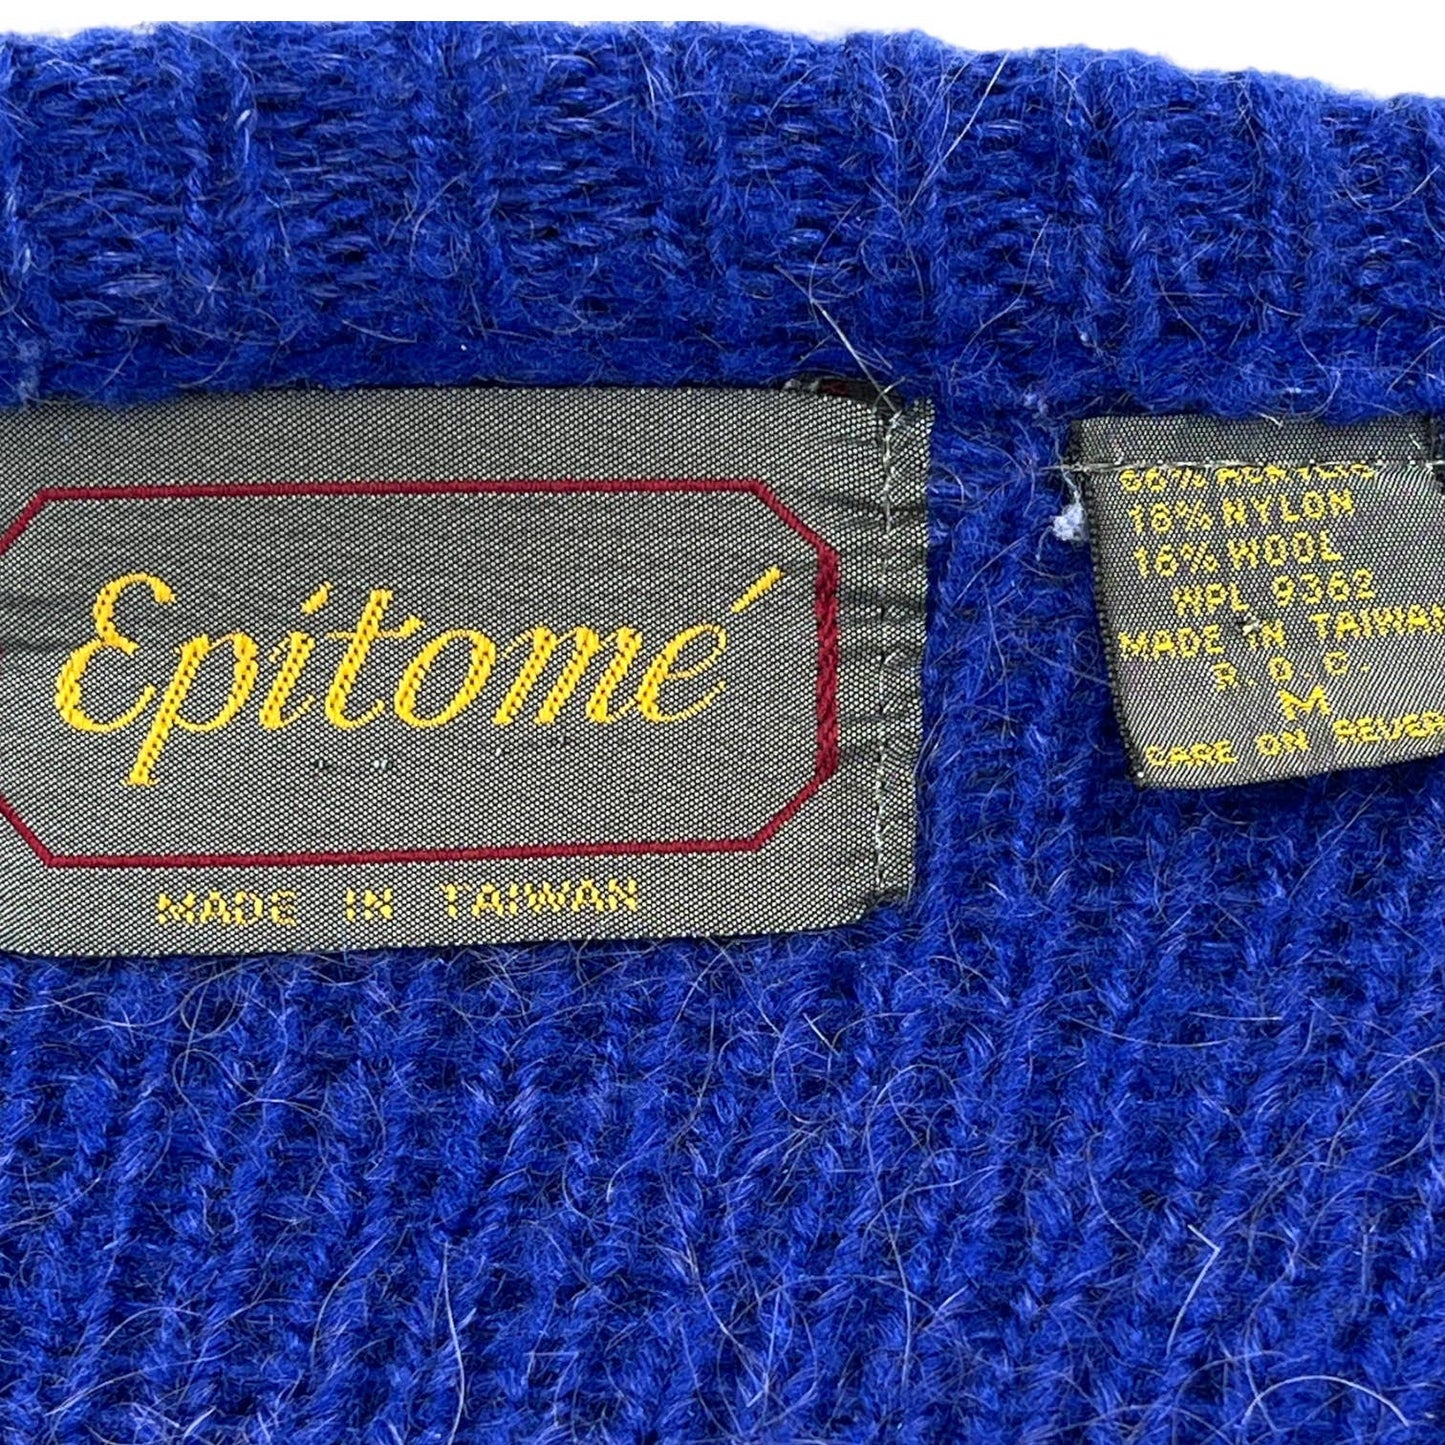 Vintage 80s Cobalt Blue Wool Blend Cardigan Sweater Puff Shoulder Epitomé Size M